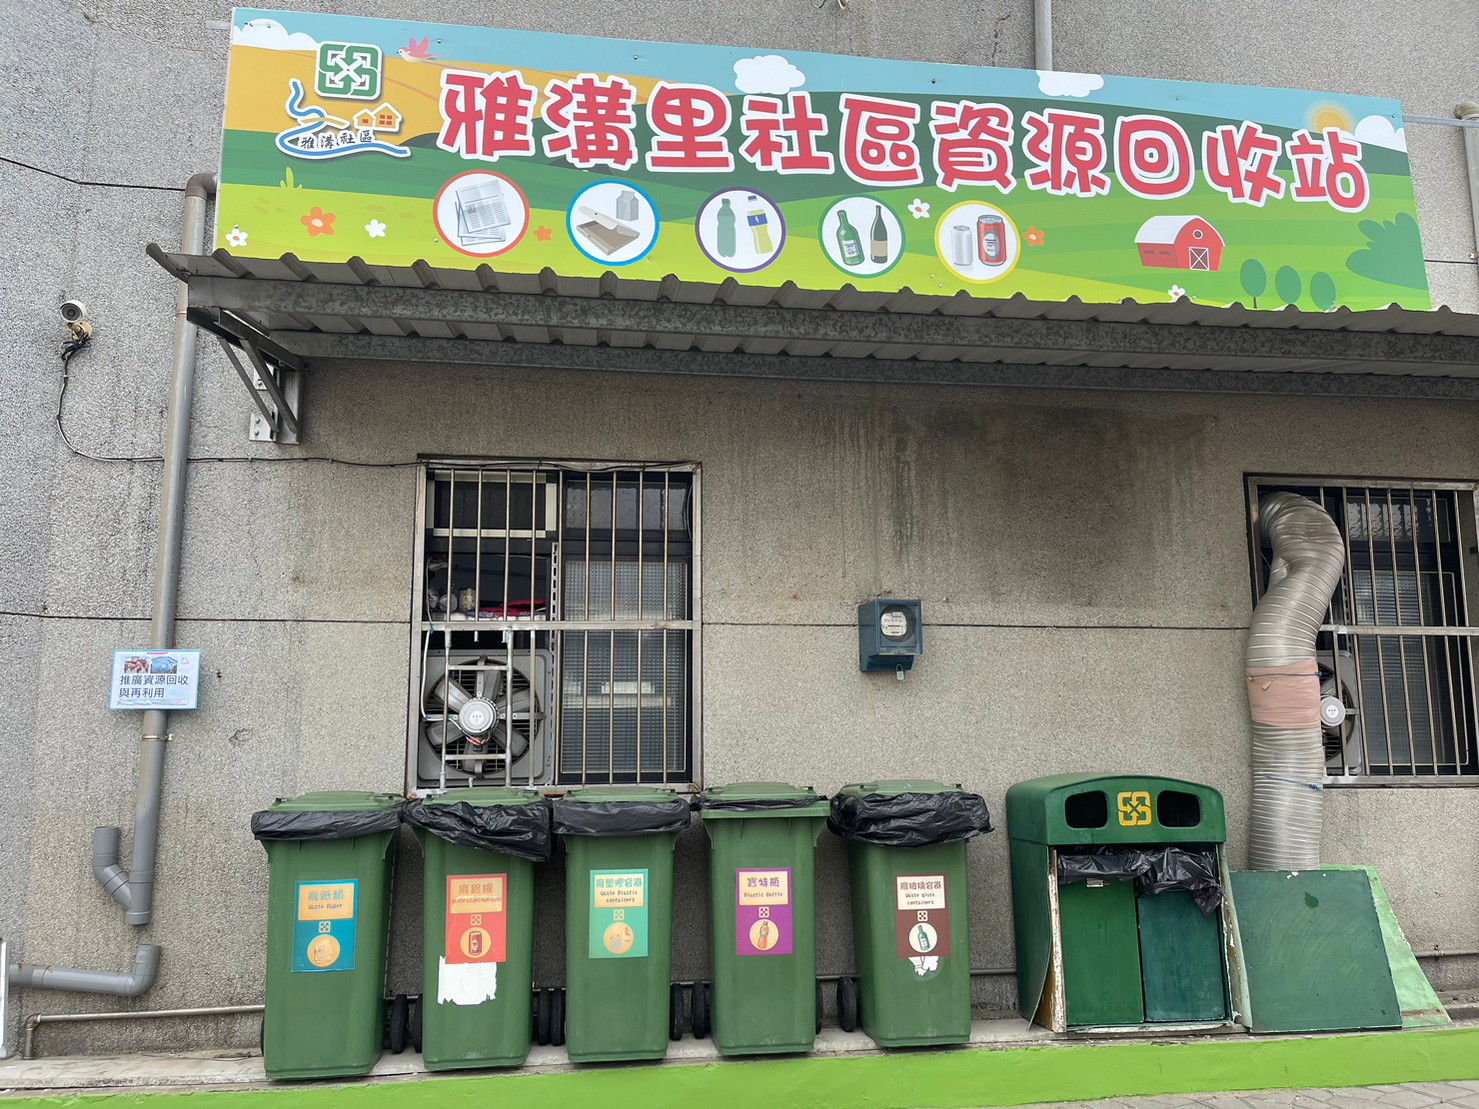 社區資源回收站設置於活動中心後方作為示範點提供給民眾及志工分類與回收